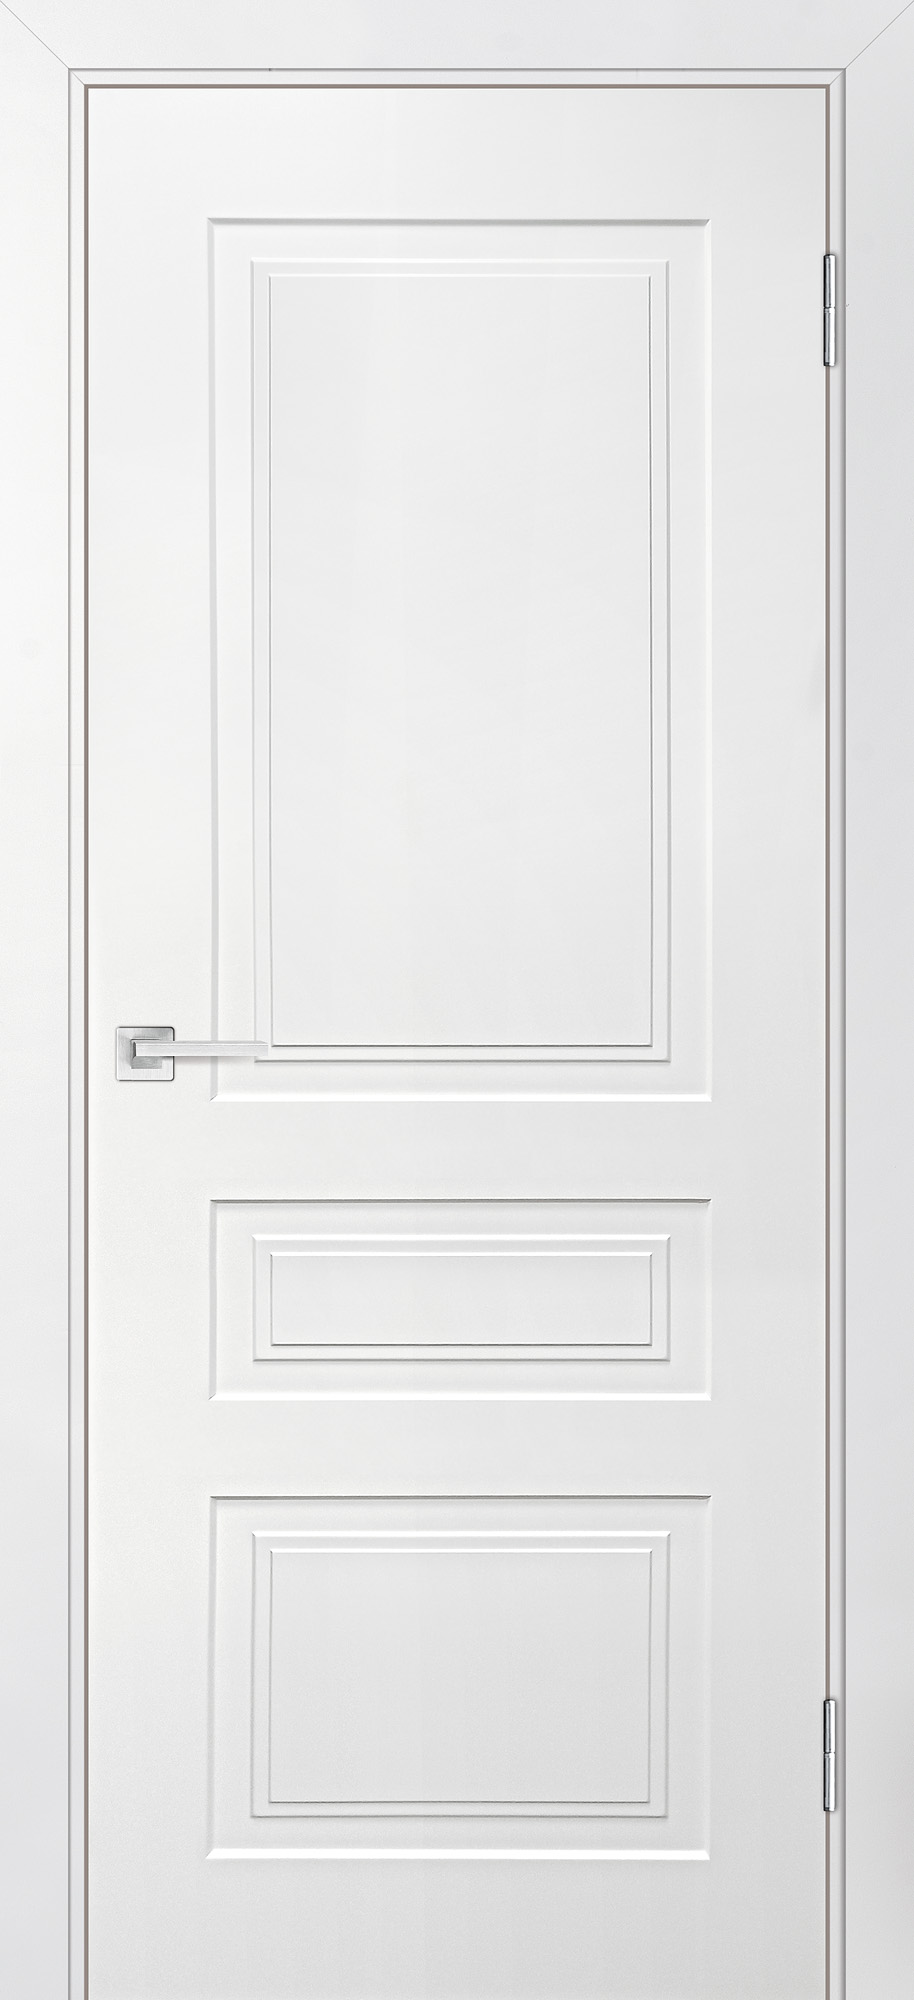 Двери крашеные (Эмаль) ТЕКОНА Смальта-Лайн 05 глухое Белый ral 9003 размер 200 х 90 см. артикул F0000093244